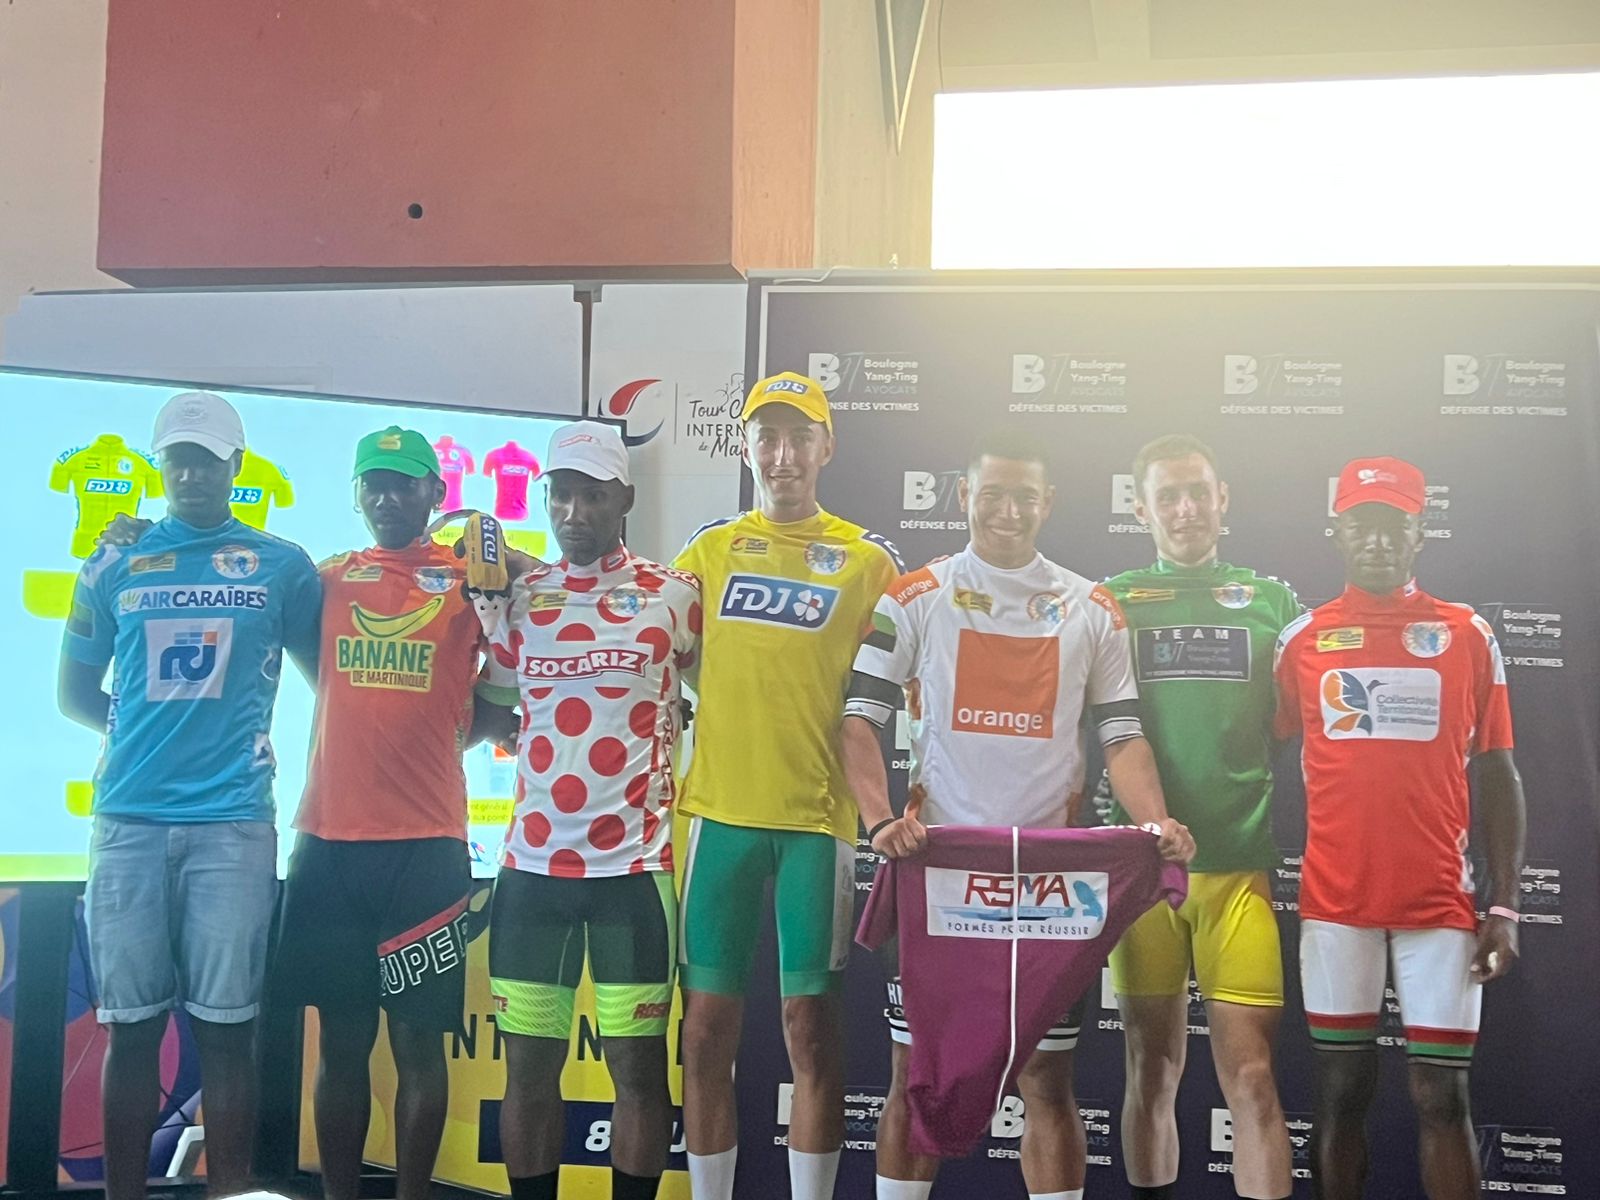     Classements et maillots après la 2ème étape du Tour Cycliste de Martinique

